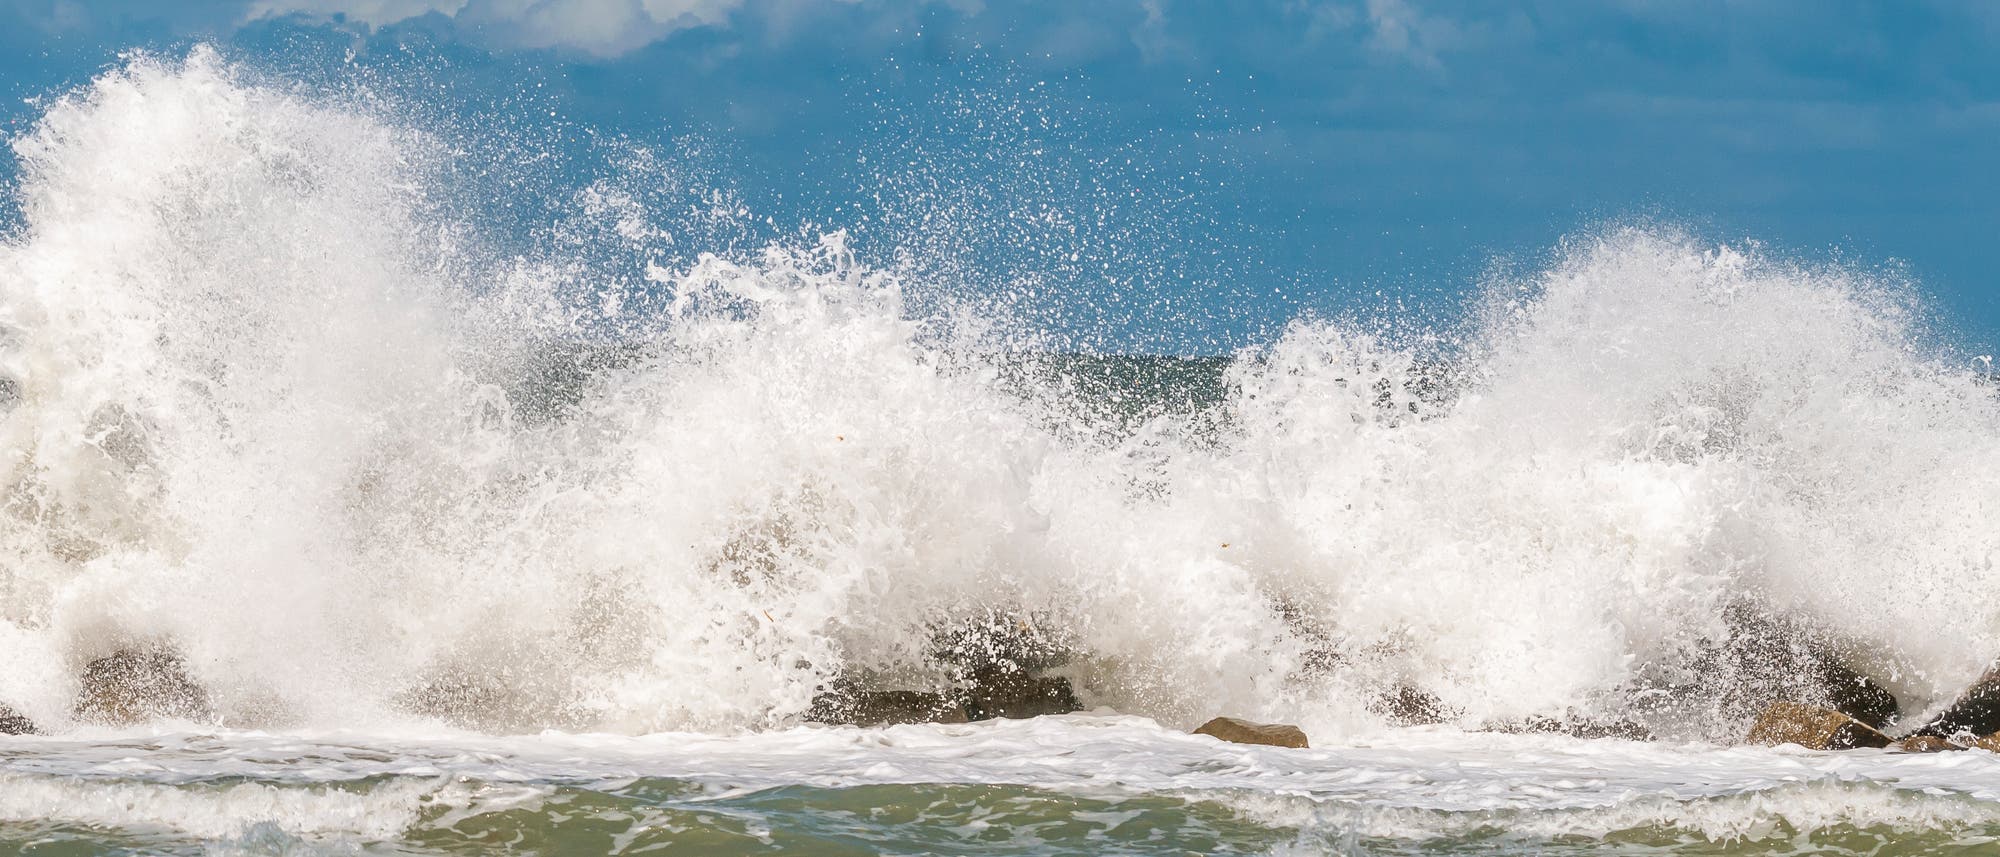 Eine Welle bricht an einem Wellenbrecher und erzeugt eine Gischtwolke.